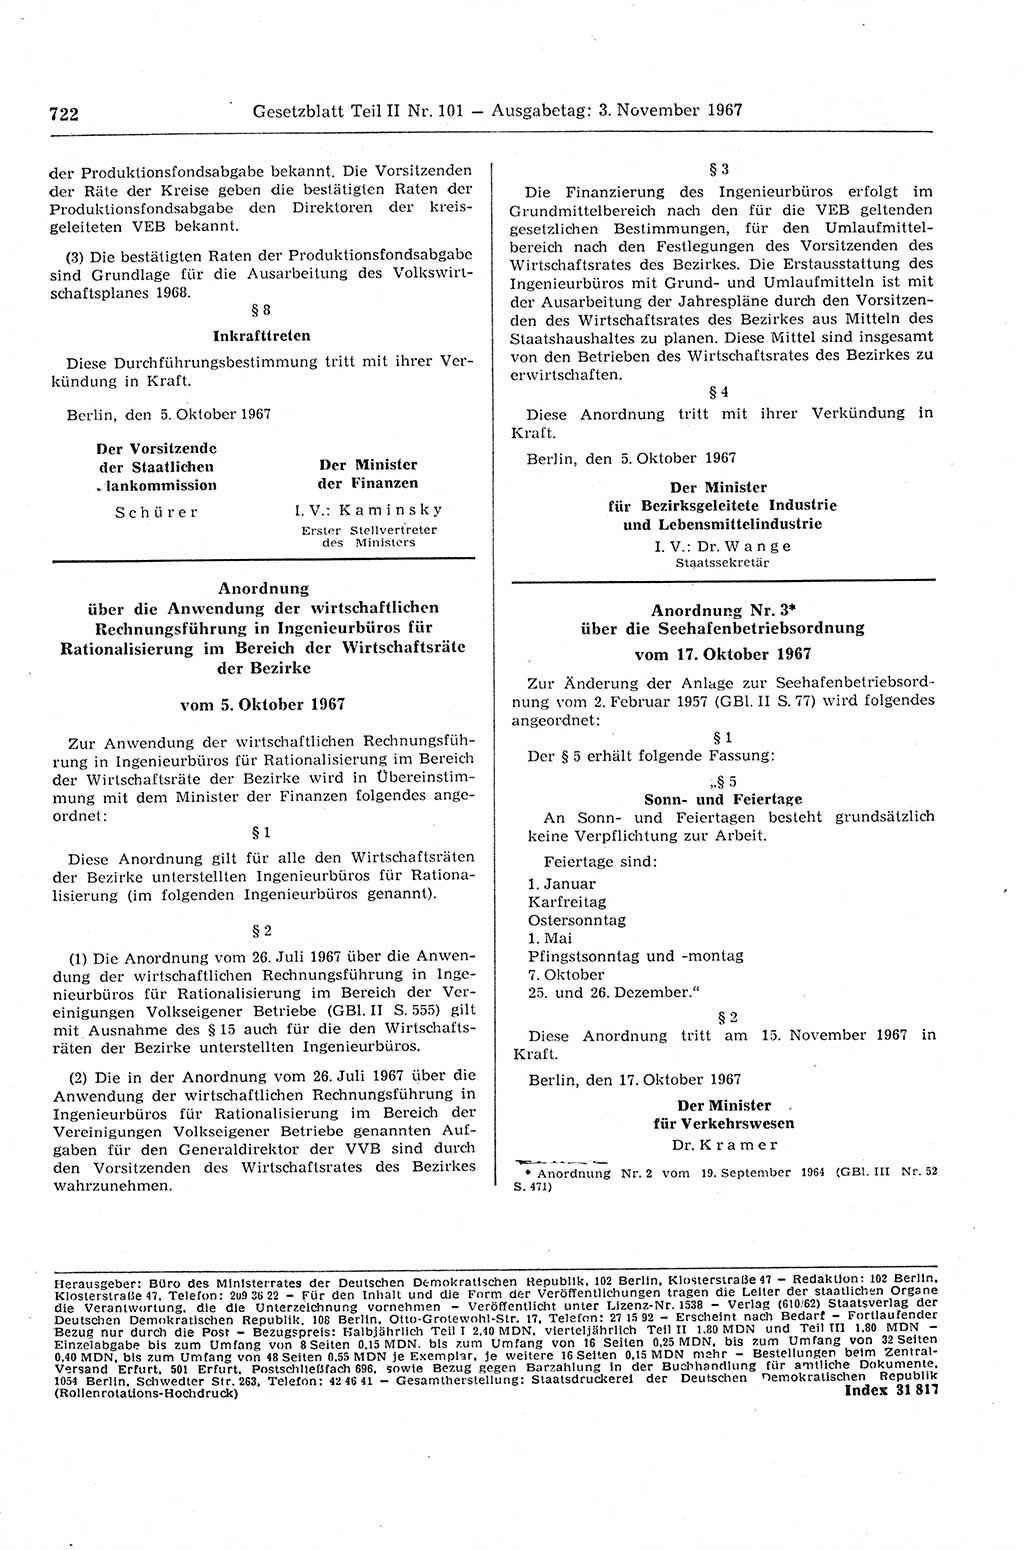 Gesetzblatt (GBl.) der Deutschen Demokratischen Republik (DDR) Teil ⅠⅠ 1967, Seite 722 (GBl. DDR ⅠⅠ 1967, S. 722)